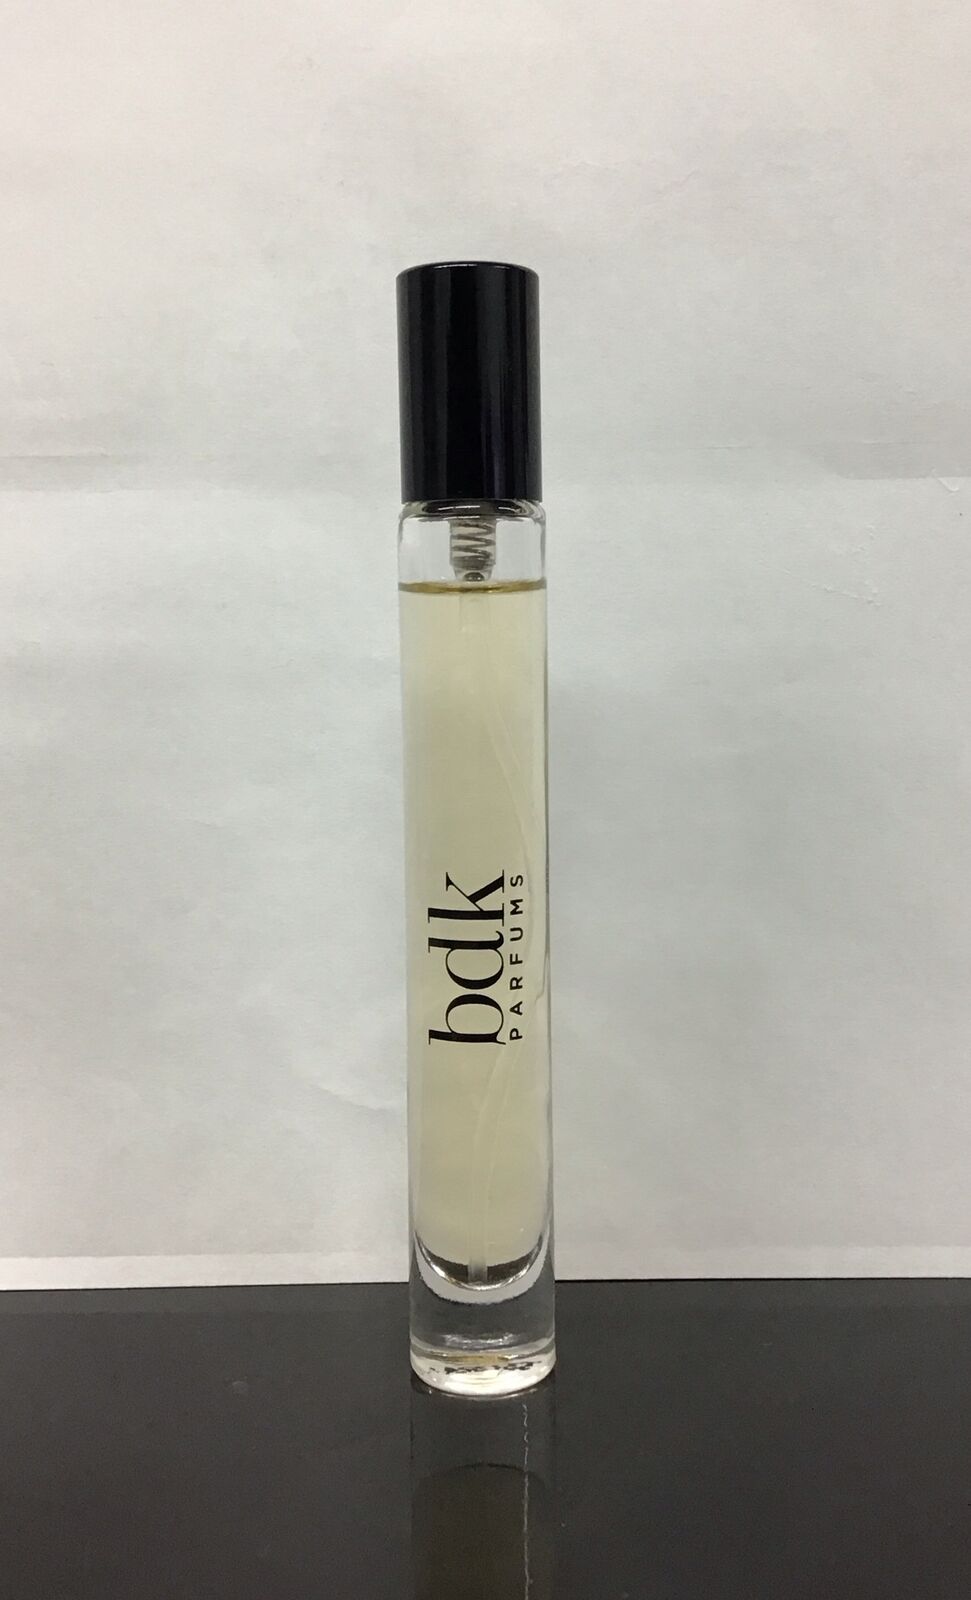 BDK Parfums - Pas Ce Soir - Eau De Parfum Spray 0.3 Fl Oz, As Pictured, No Box.